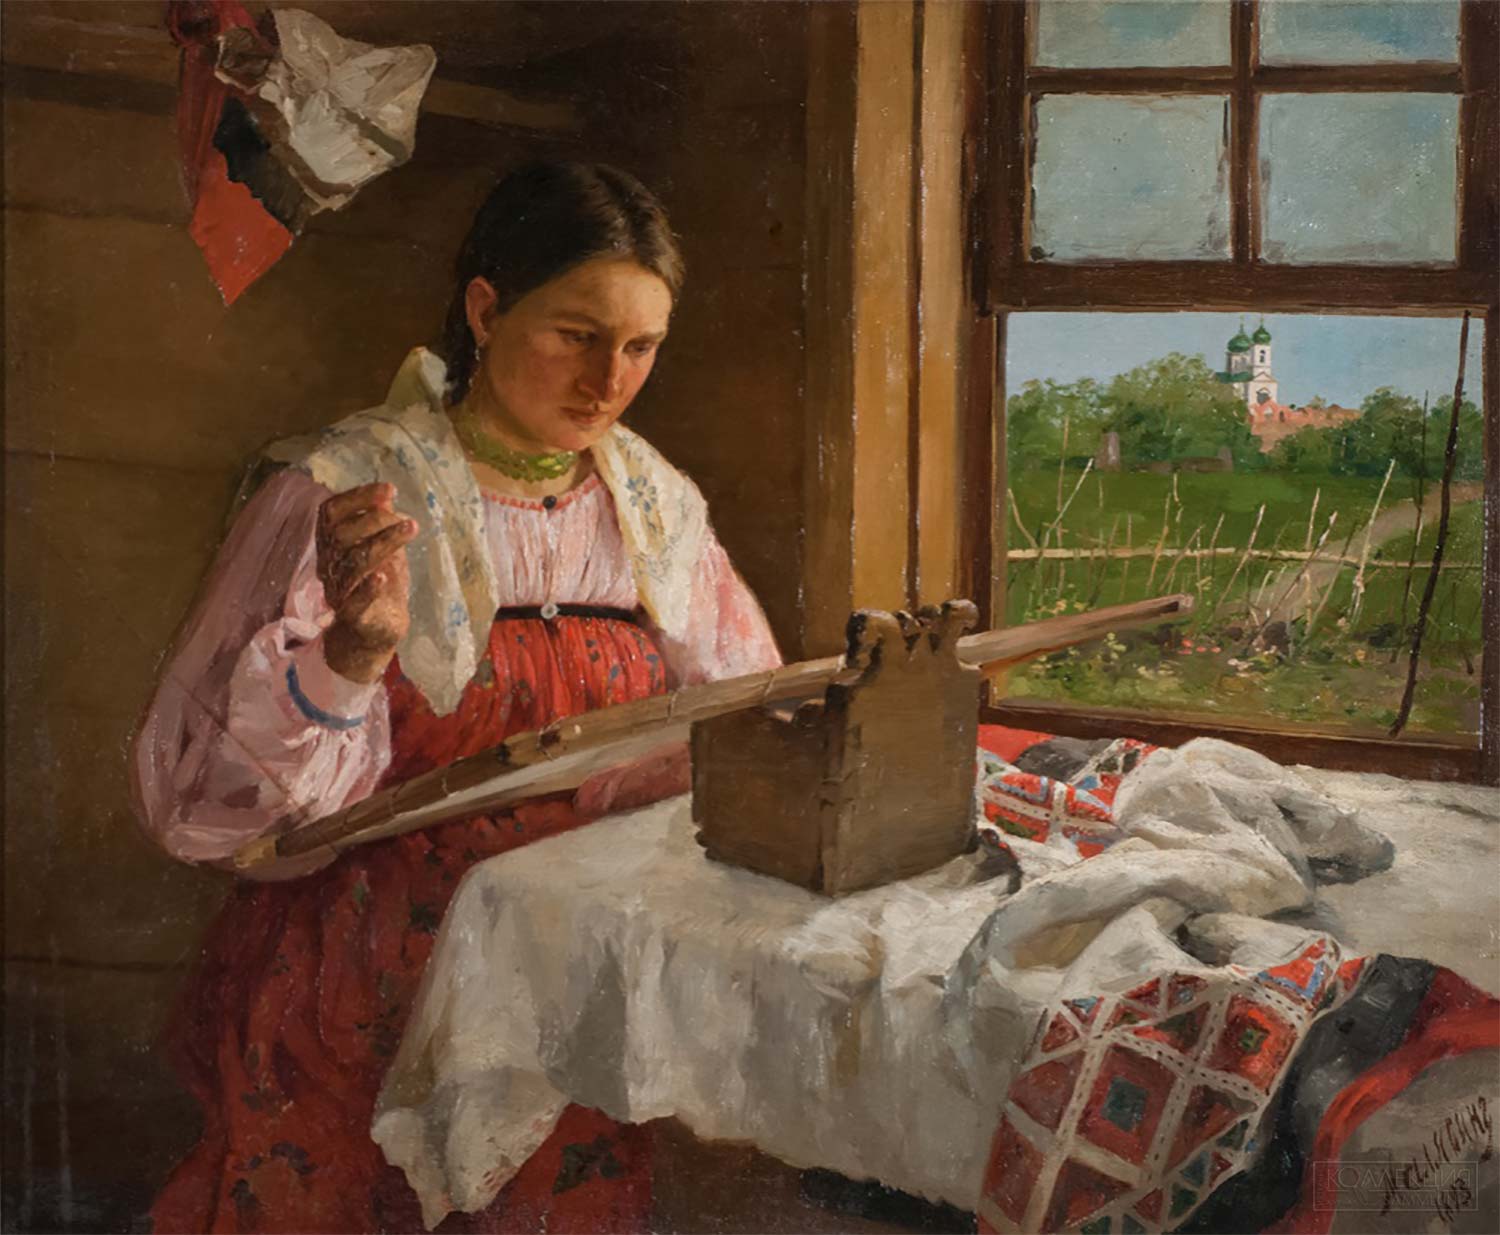 Малявин Ф.А. Крестьянская девушка за вышиванием. 1893. ГРМ